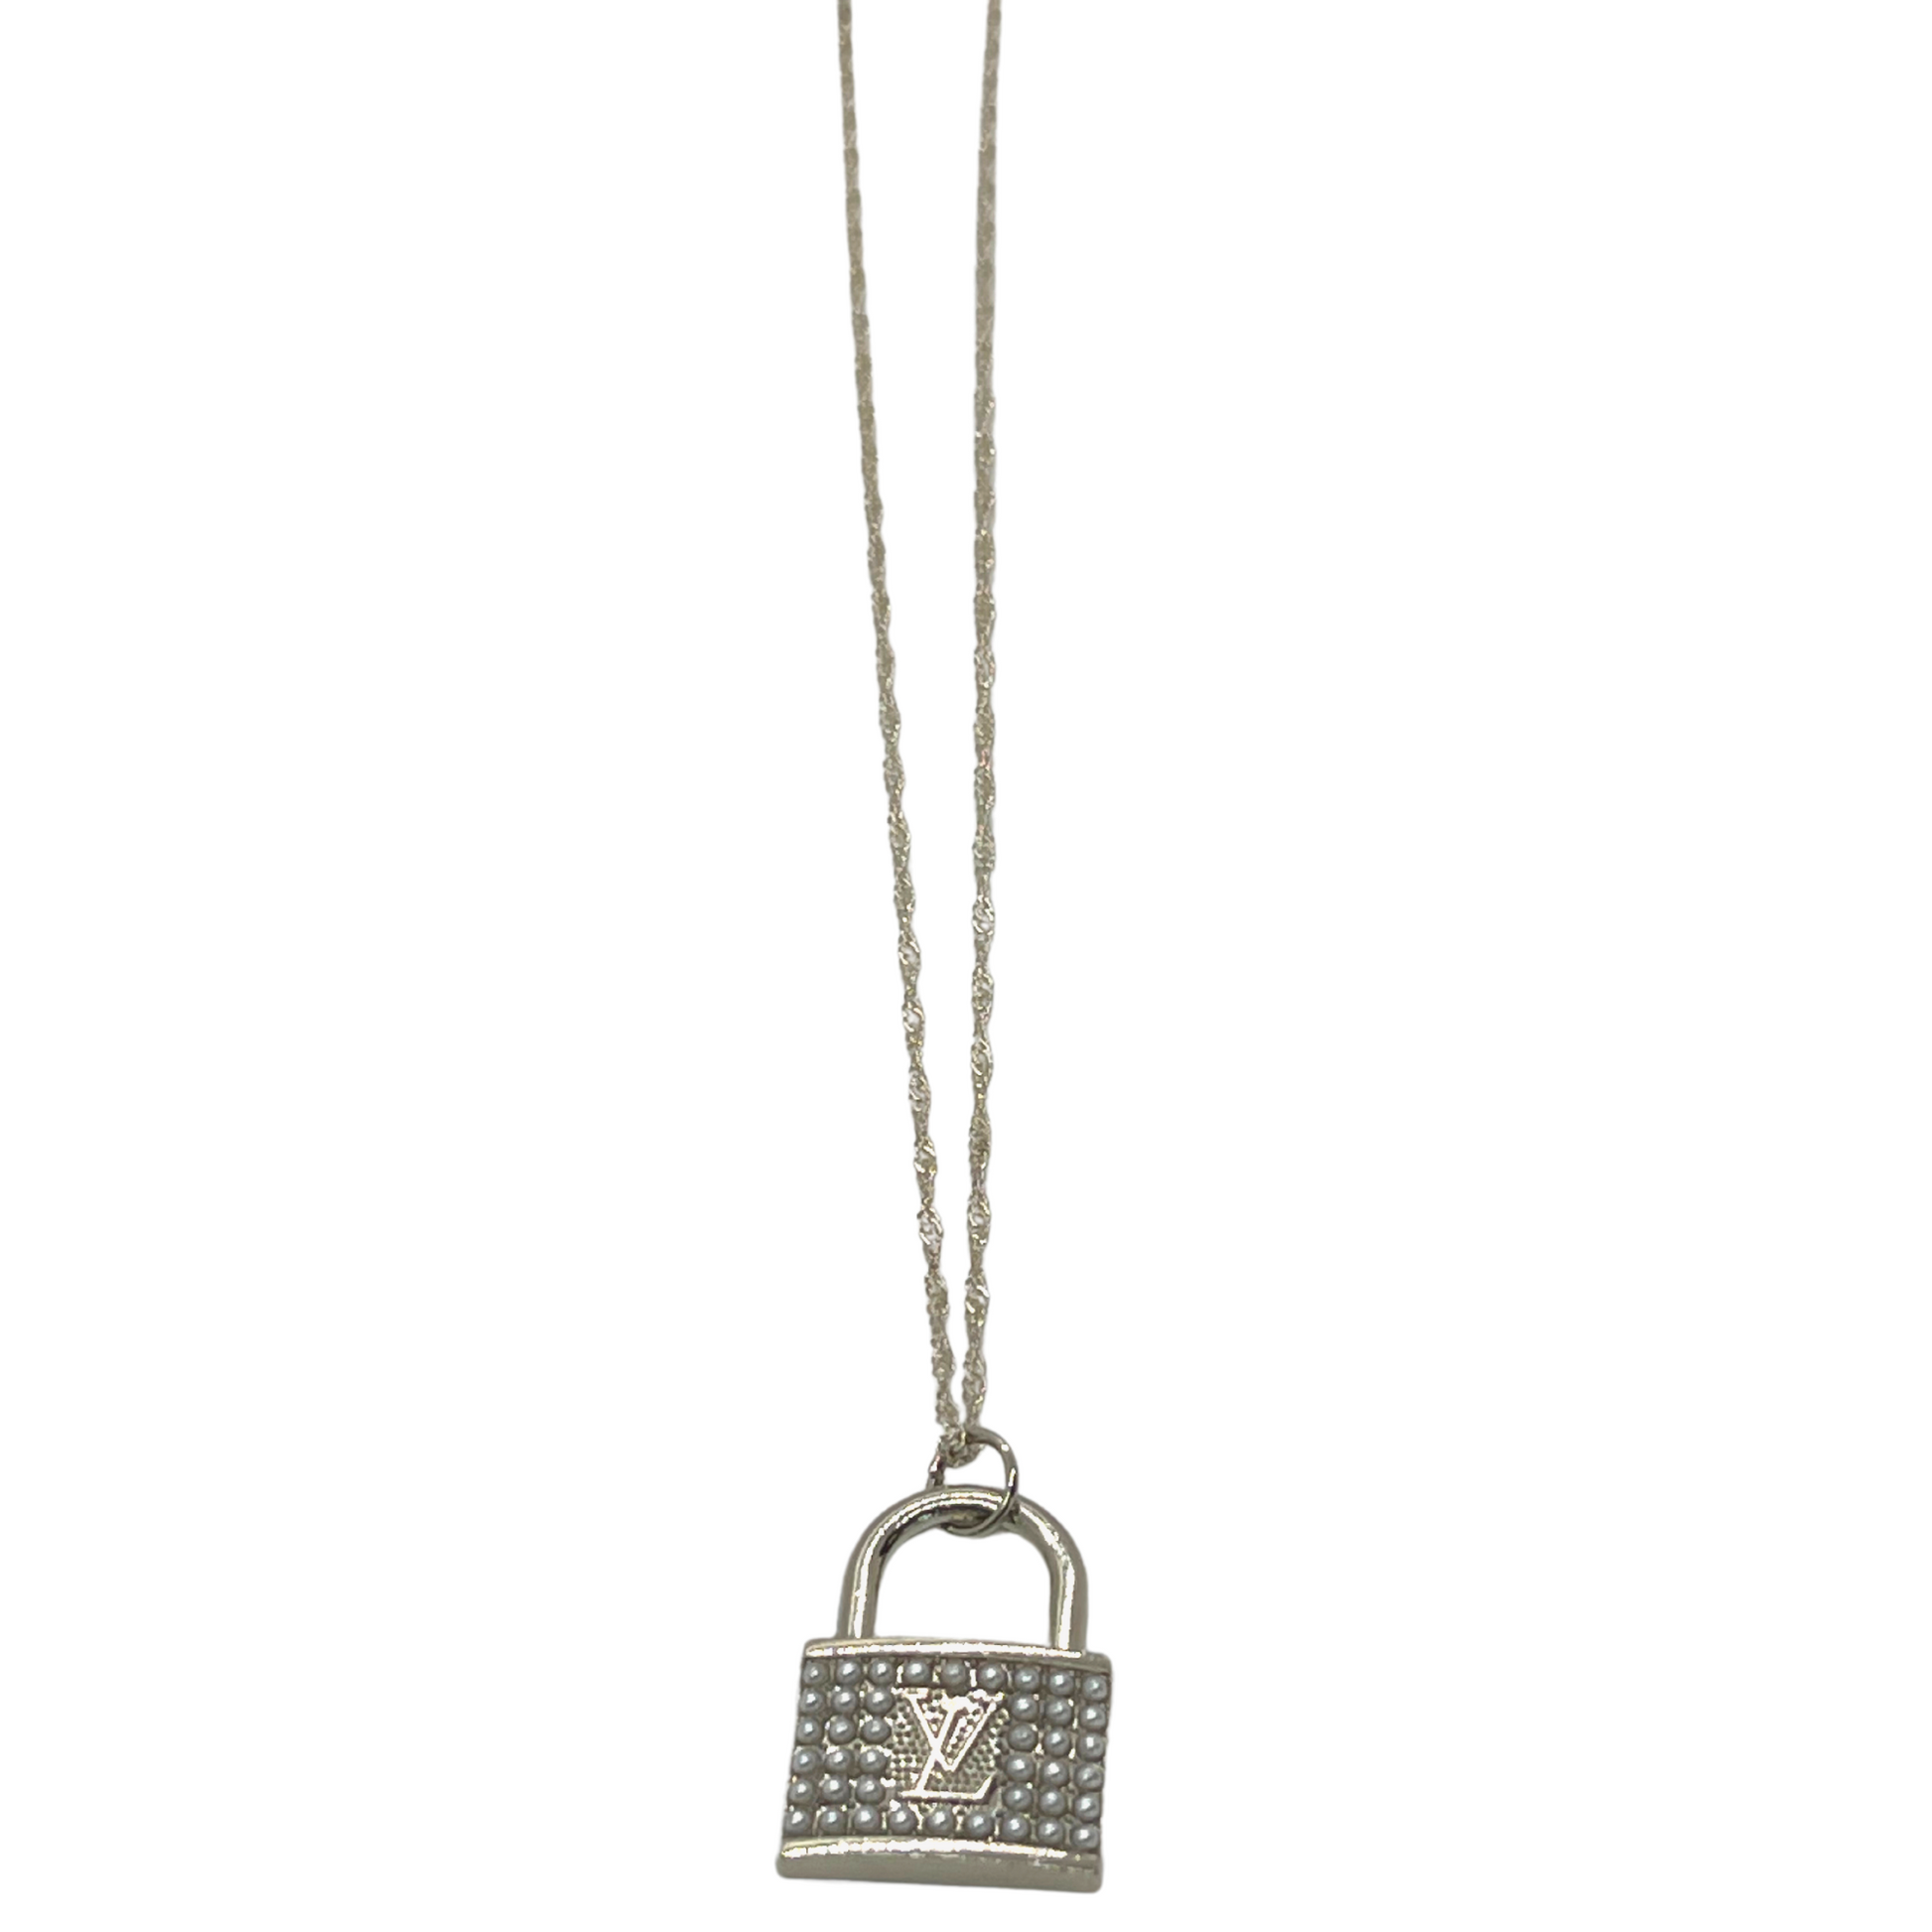 Authentic Louis Vuitton Purse Pendant | Reworked Silver 15" Necklace